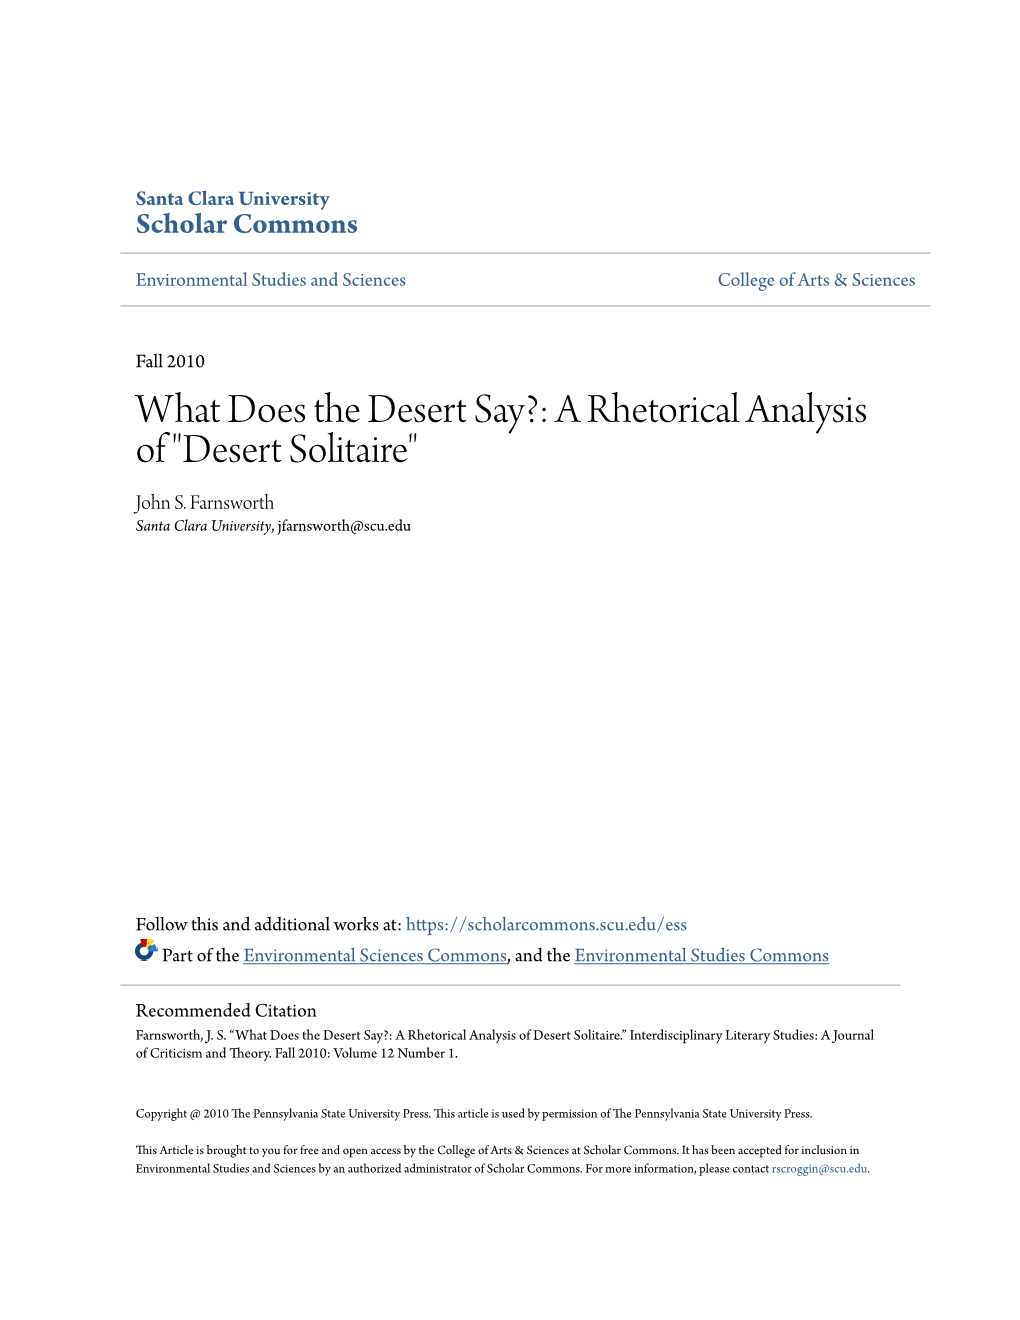 A Rhetorical Analysis of "Desert Solitaire" John S